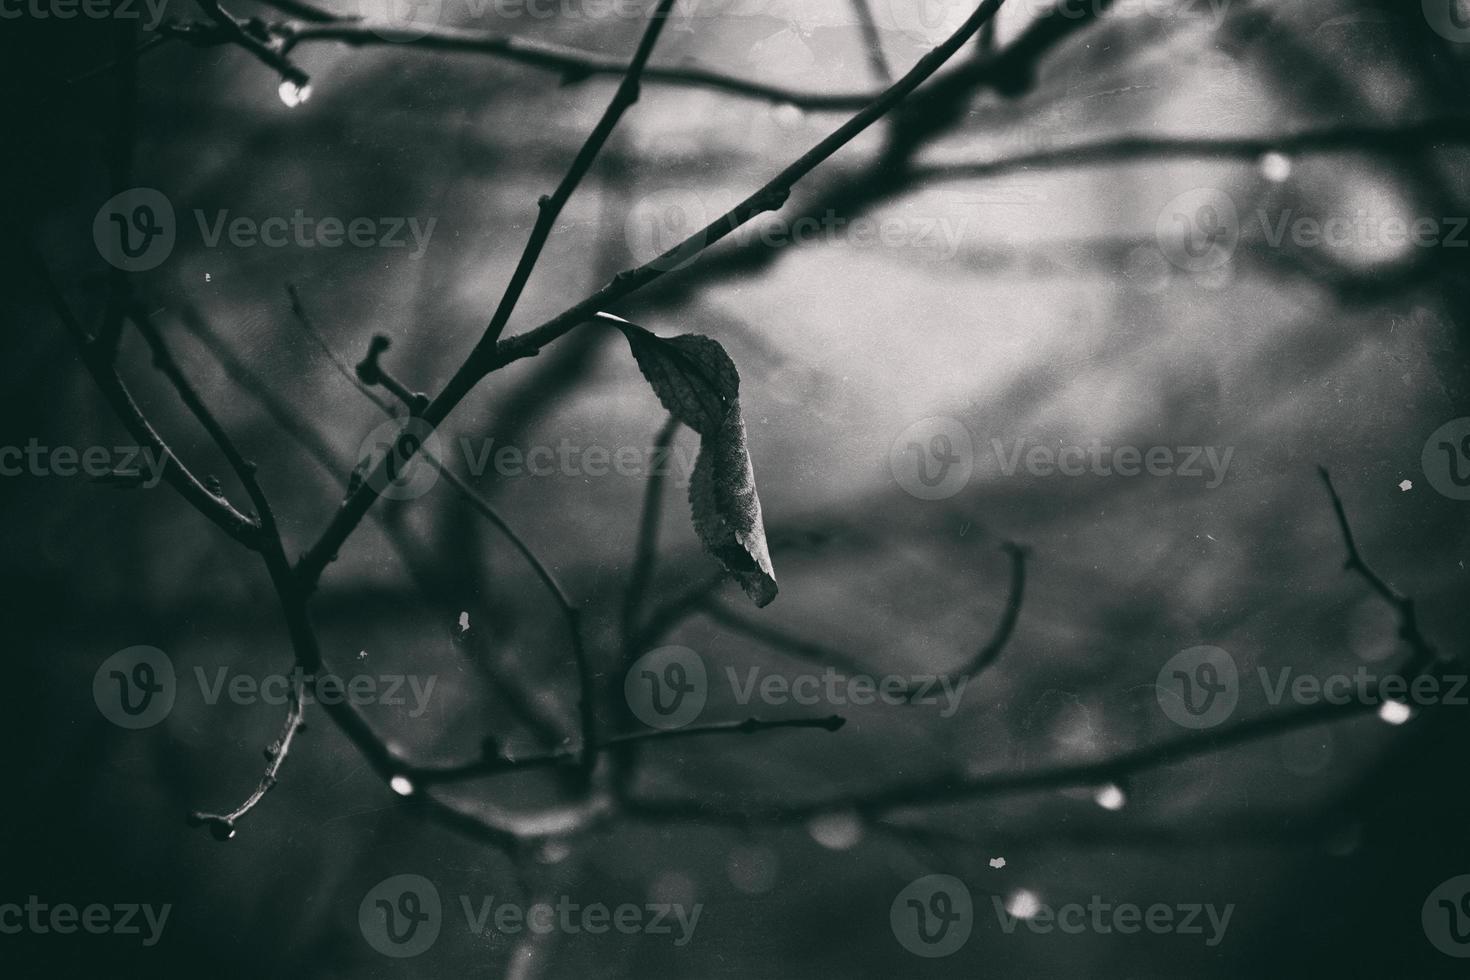 solitário sem folhas árvore galhos com gotas do água depois de uma novembro frio chuva foto